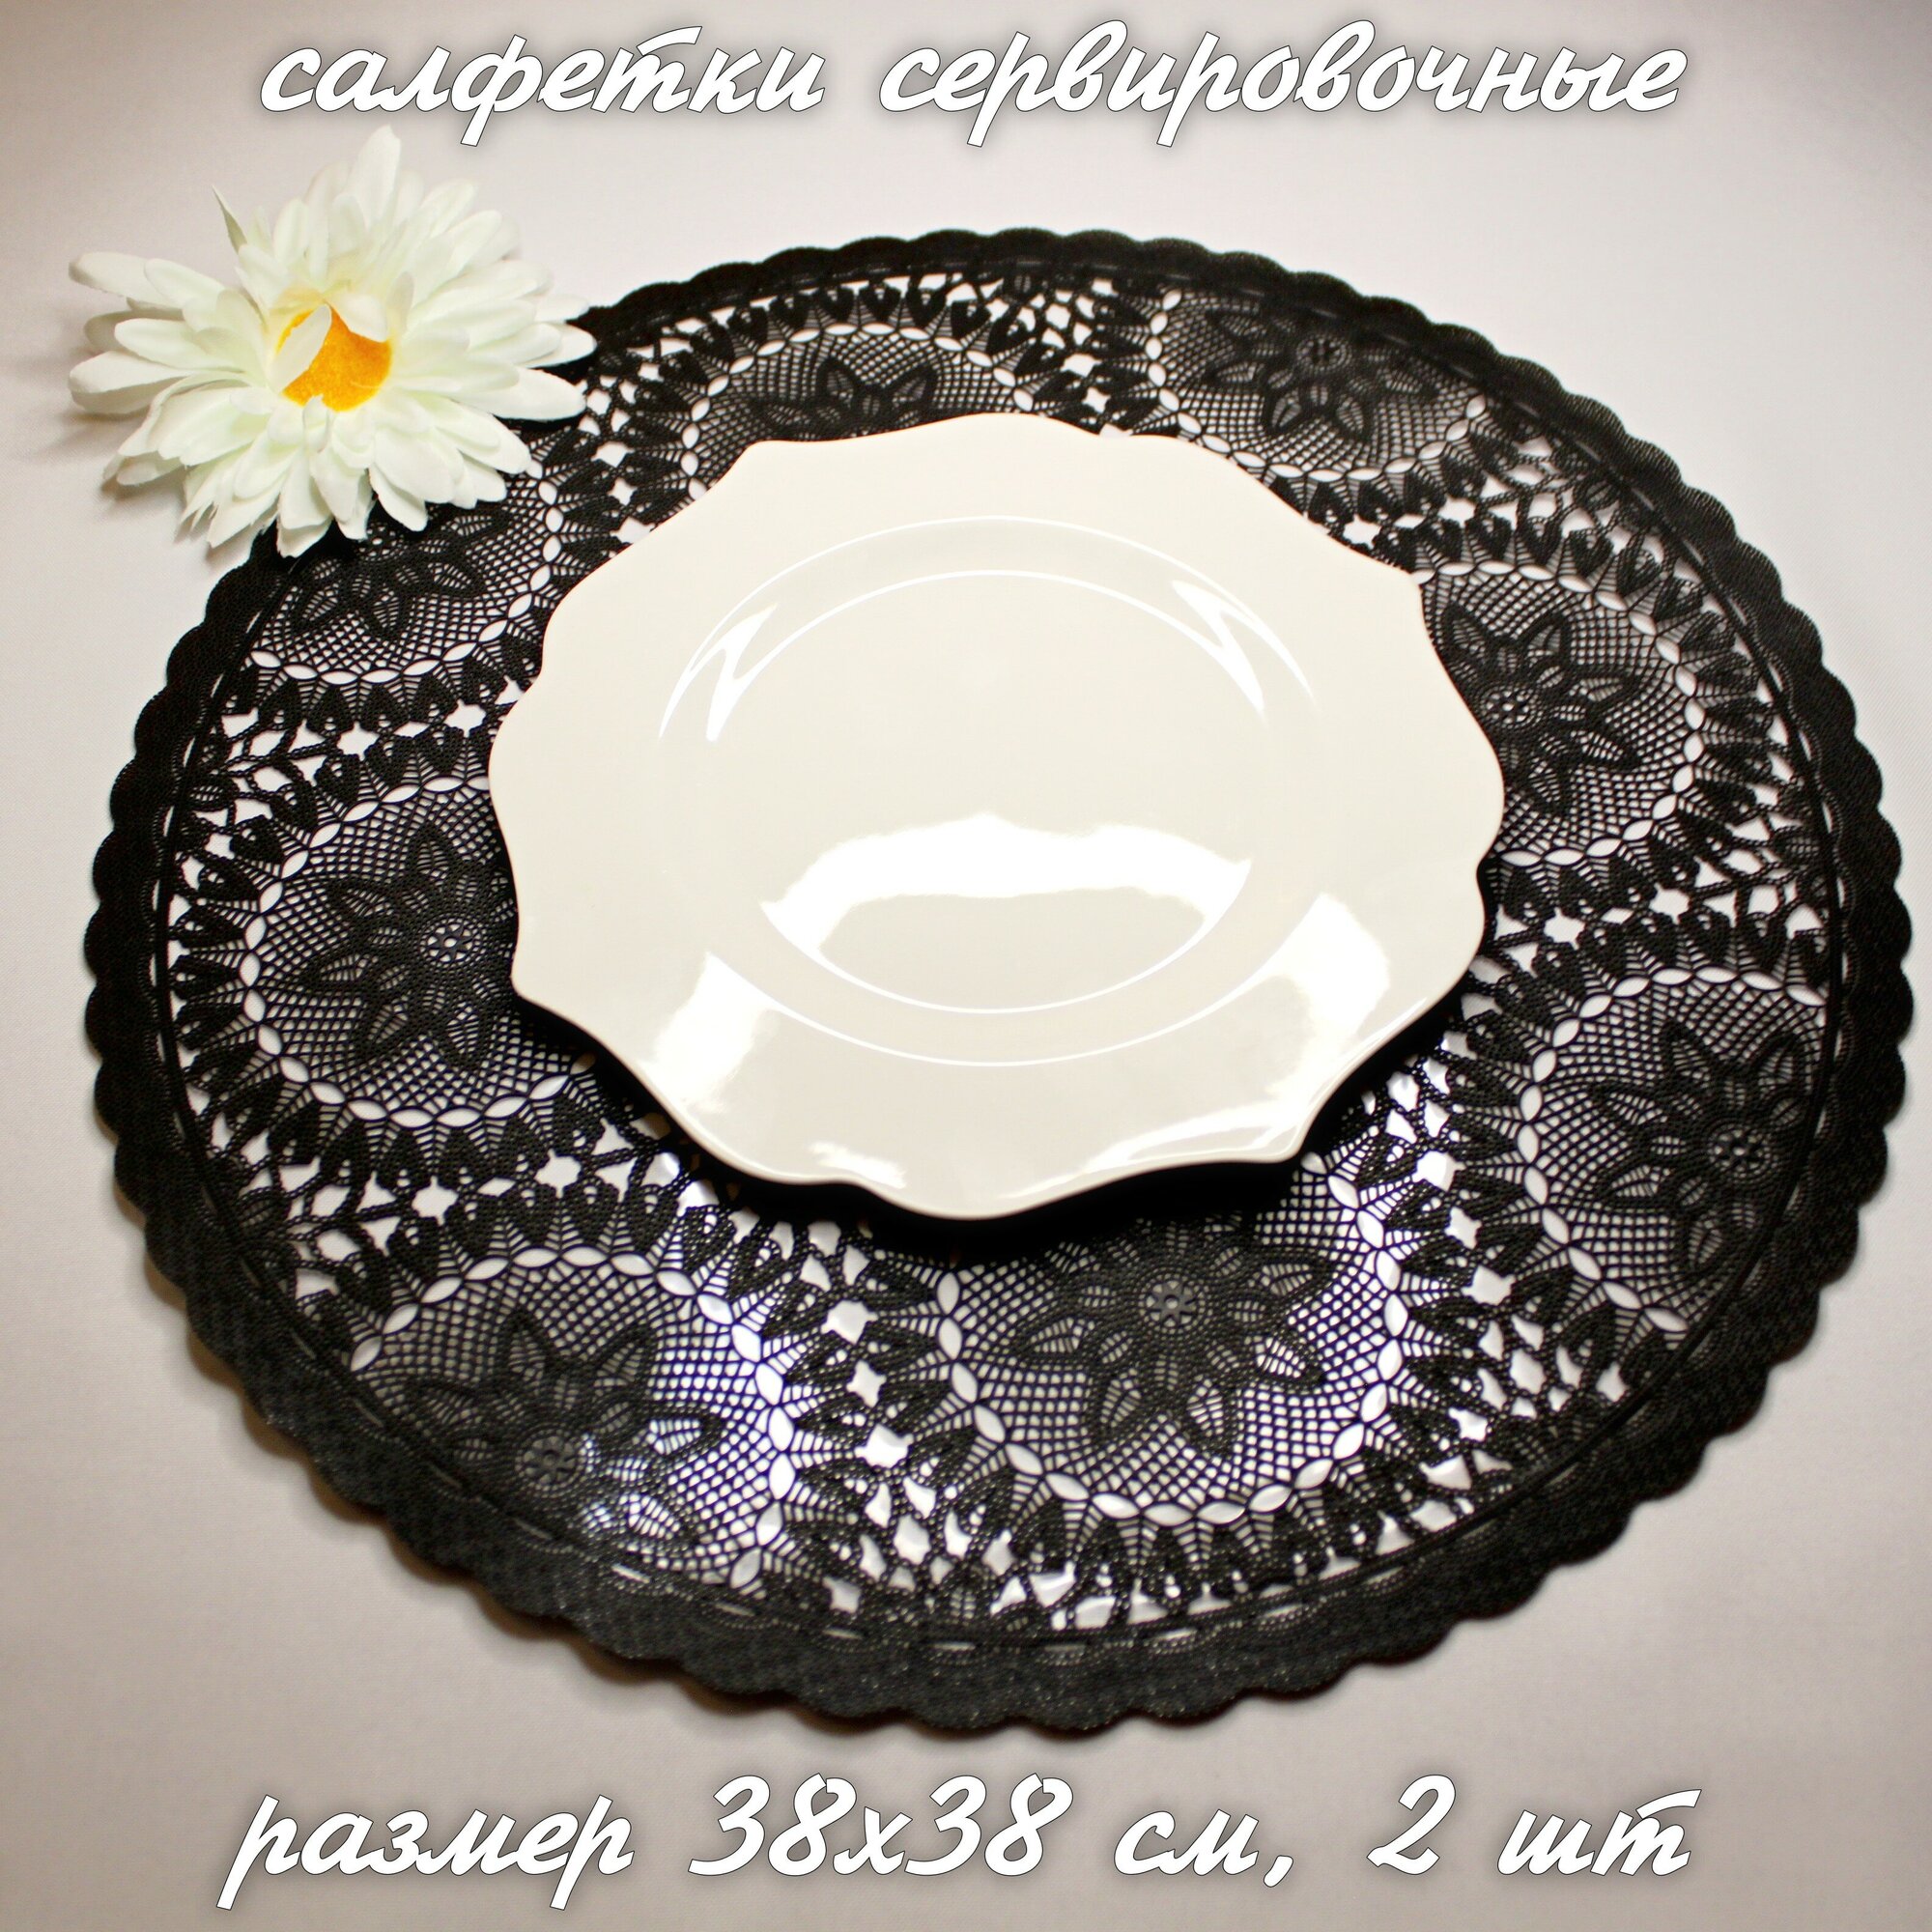 Круглые кружевные плейсматы (салфетки) для сервировки стола, подставка под горячее, 38х38 см, цвет черный, в комплекте 2 шт